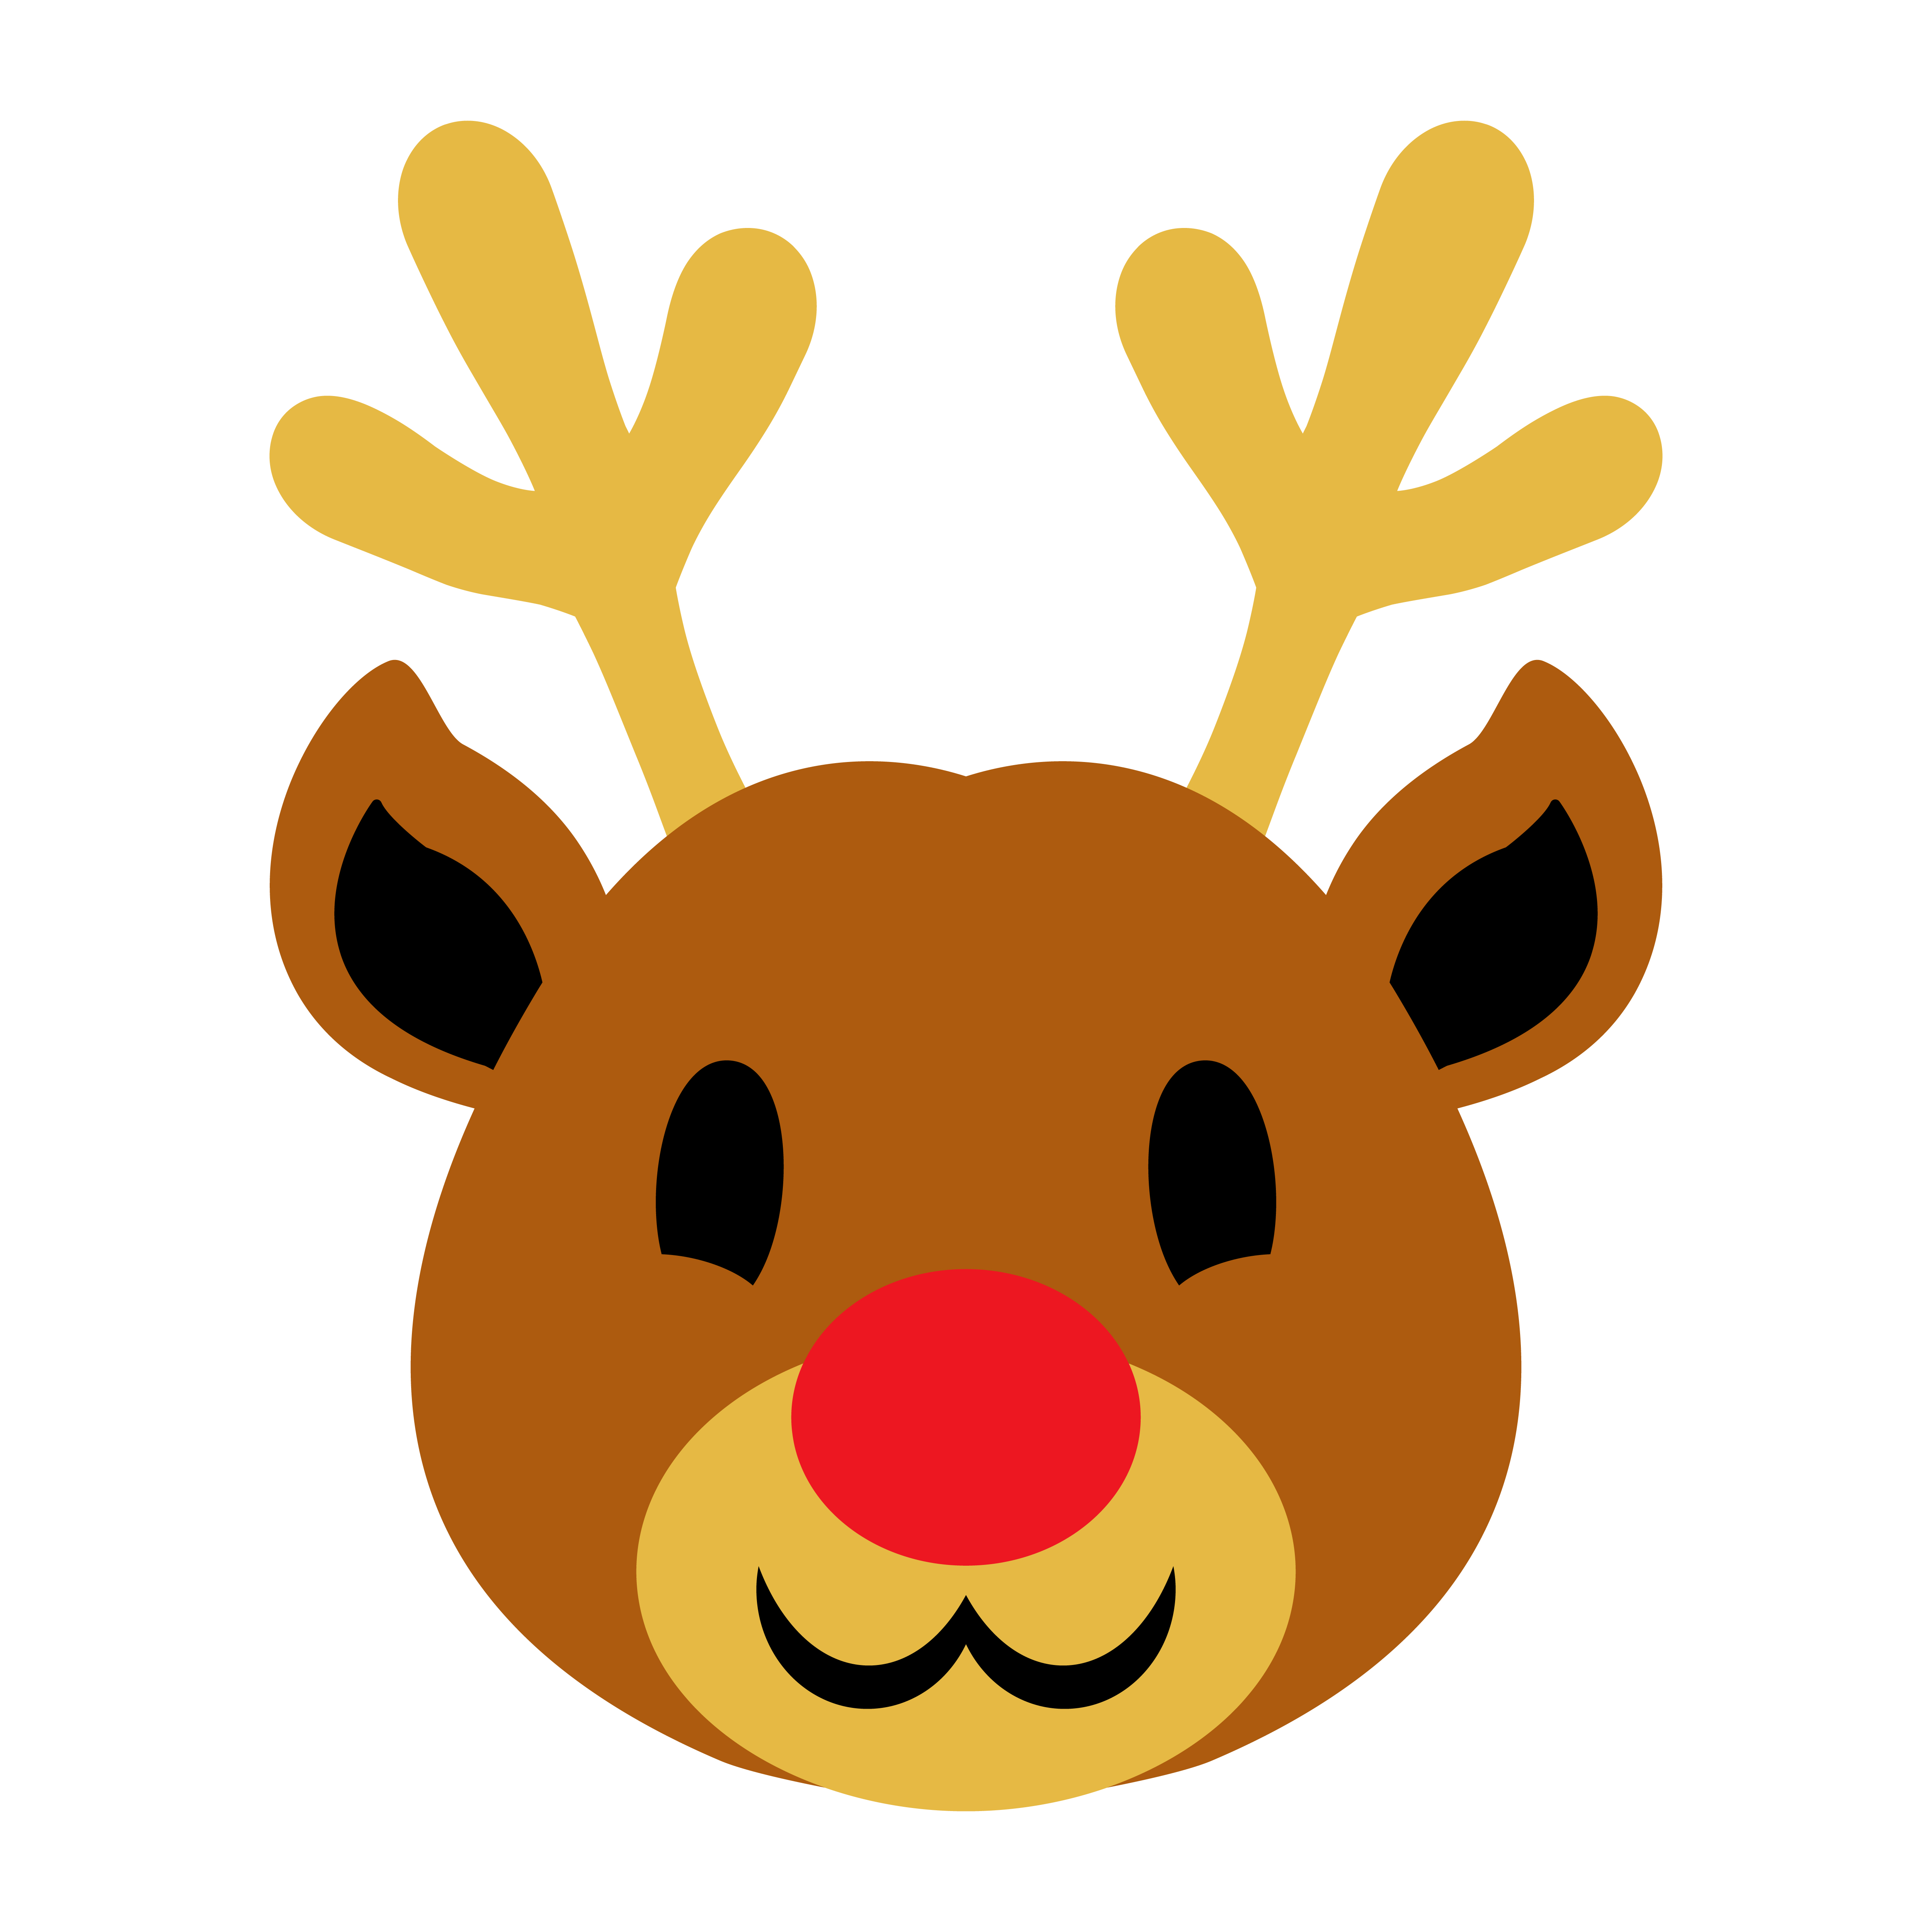 Download Christmas Reindeer - Download Free Vectors, Clipart ...